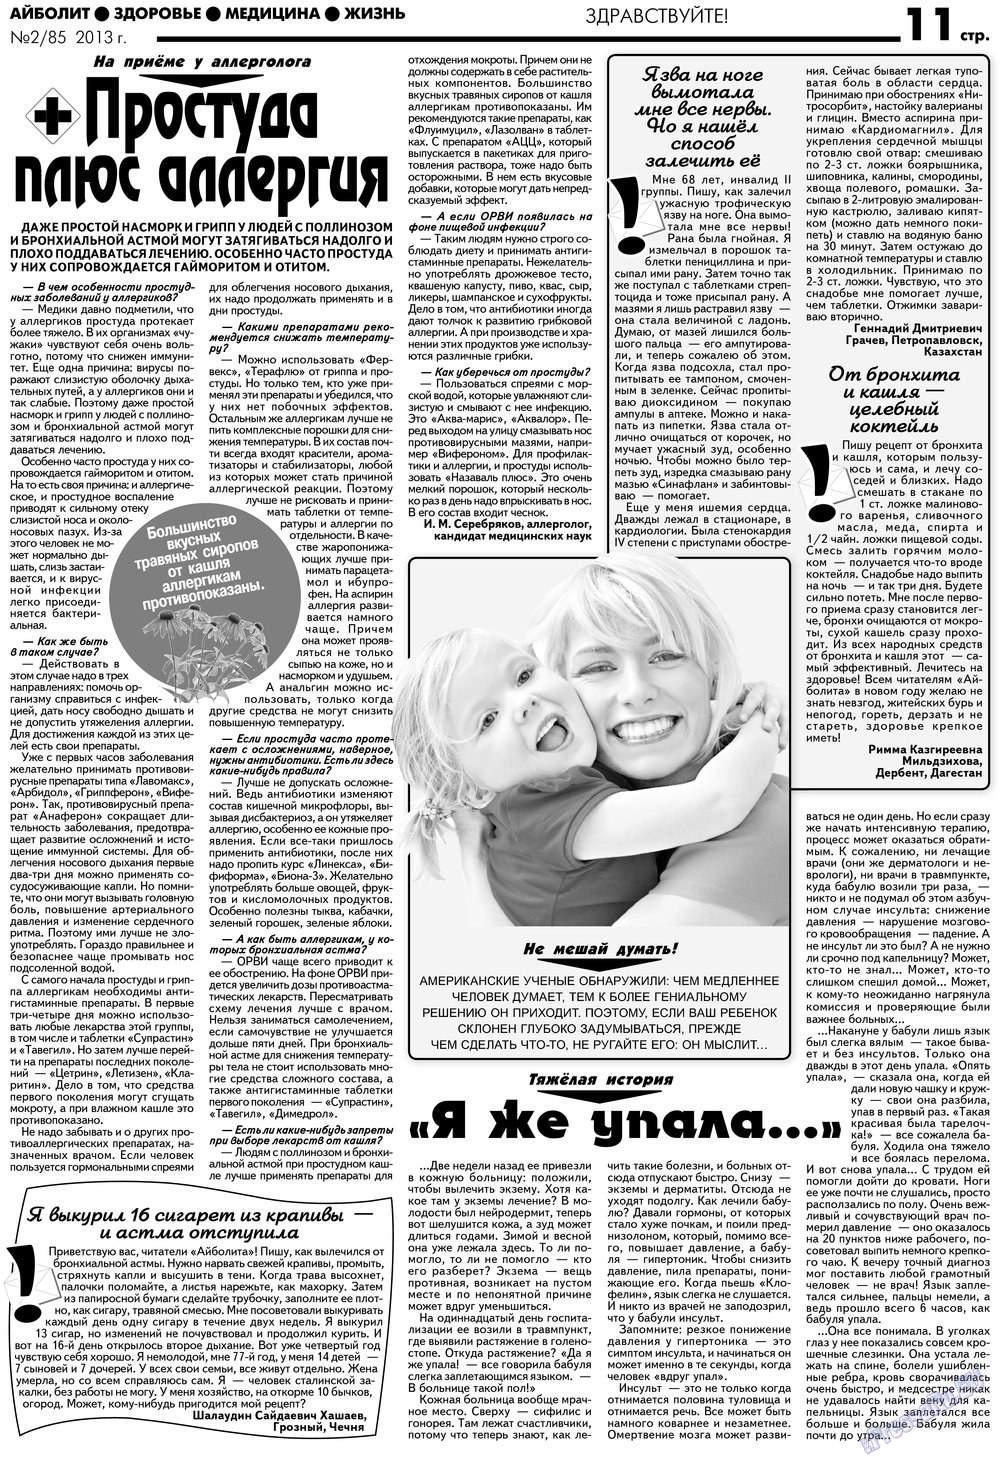 АйБолит, газета. 2013 №2 стр.11